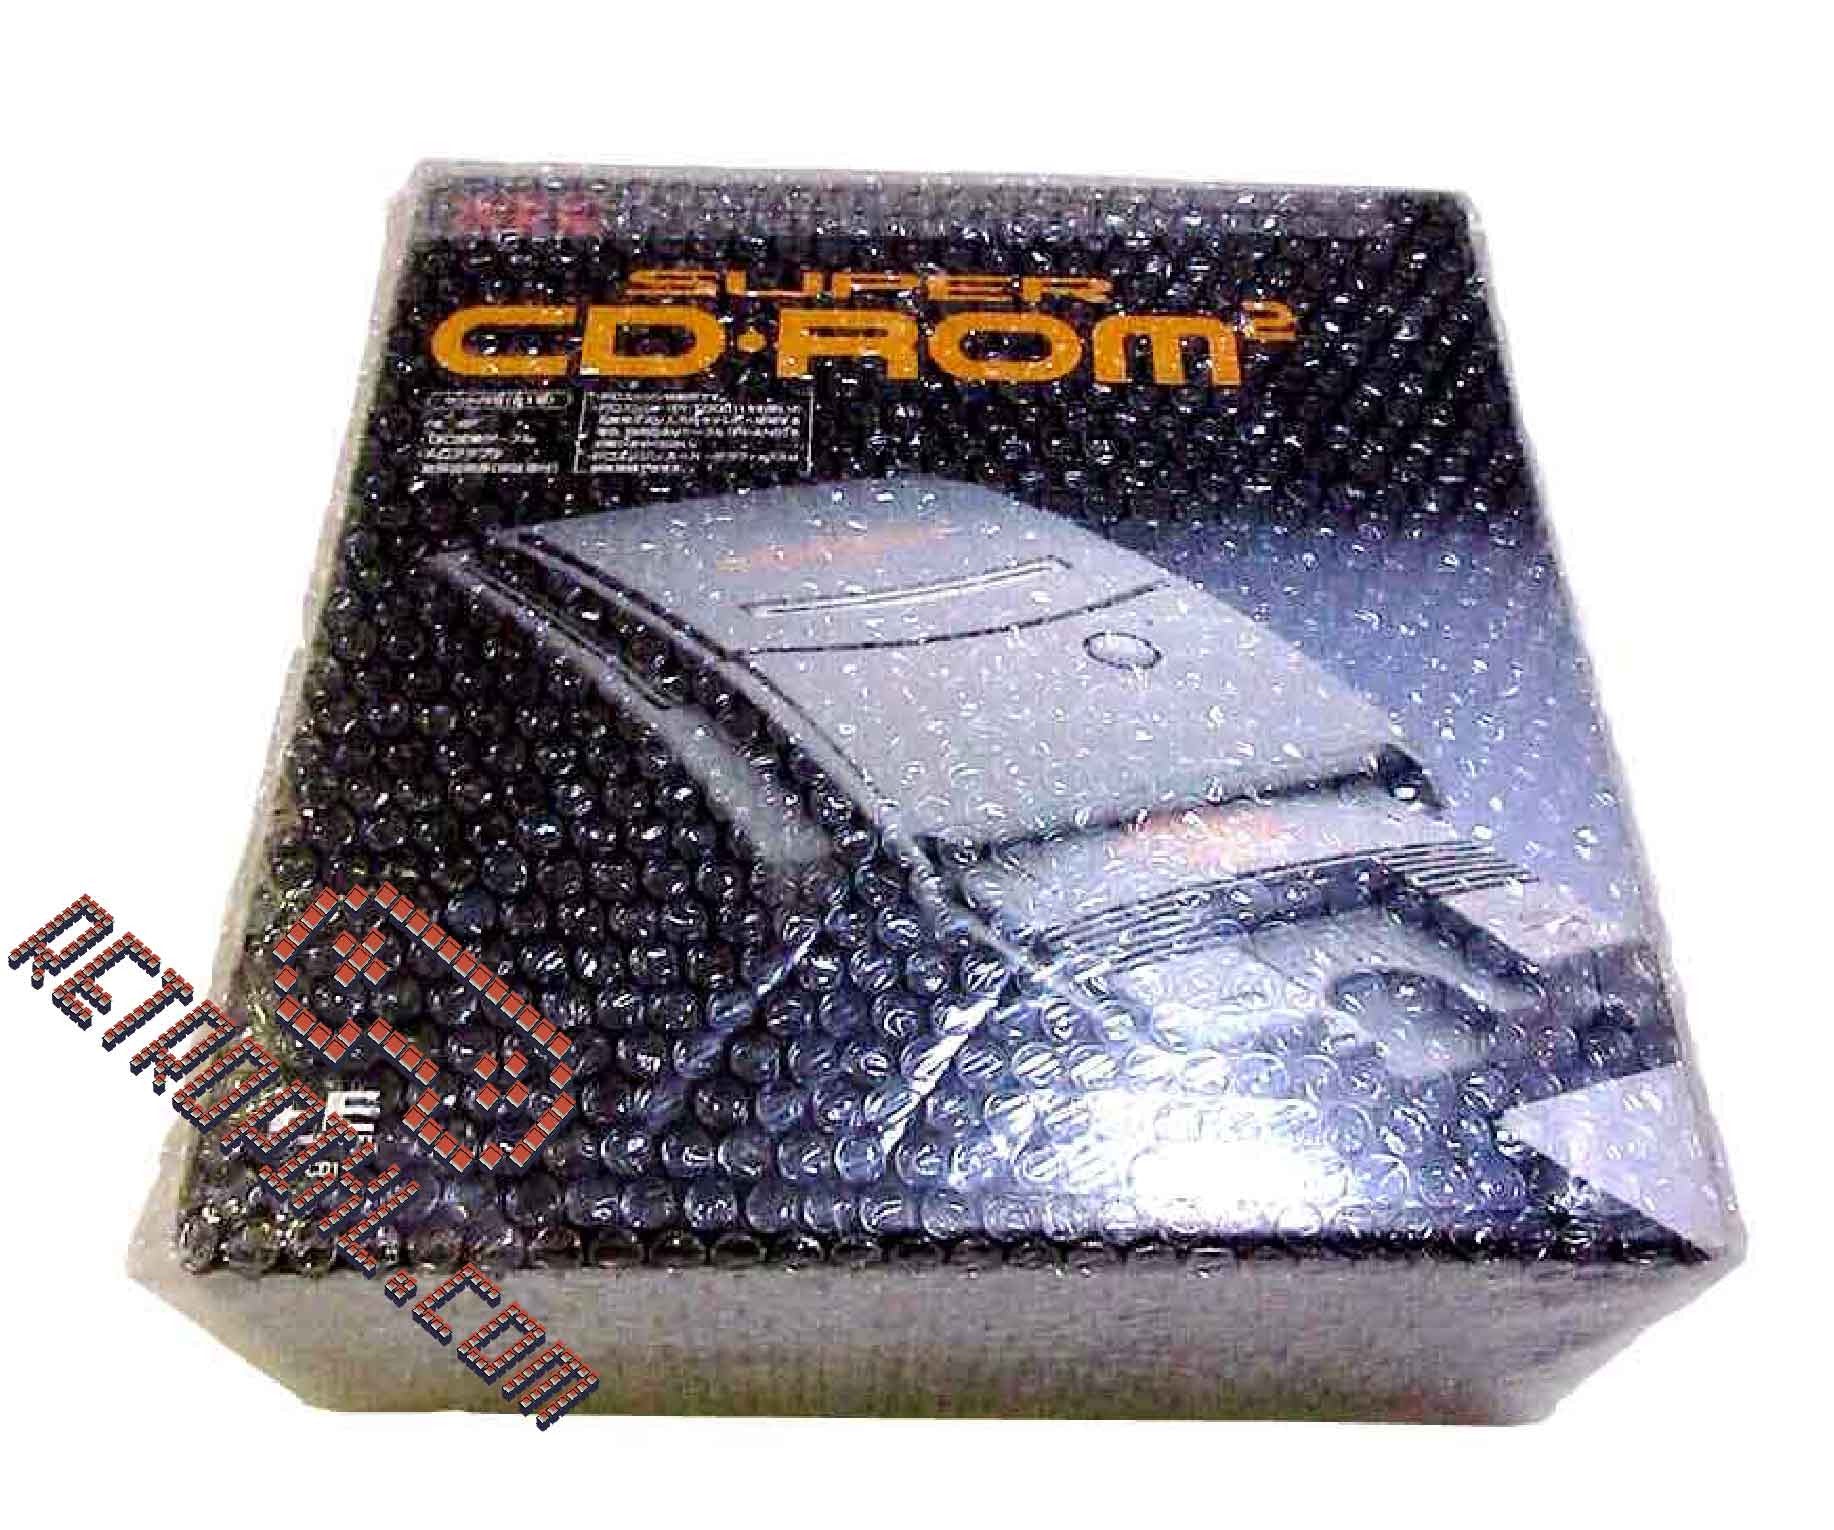 Nec Pc-Engine Super CD ROM 2